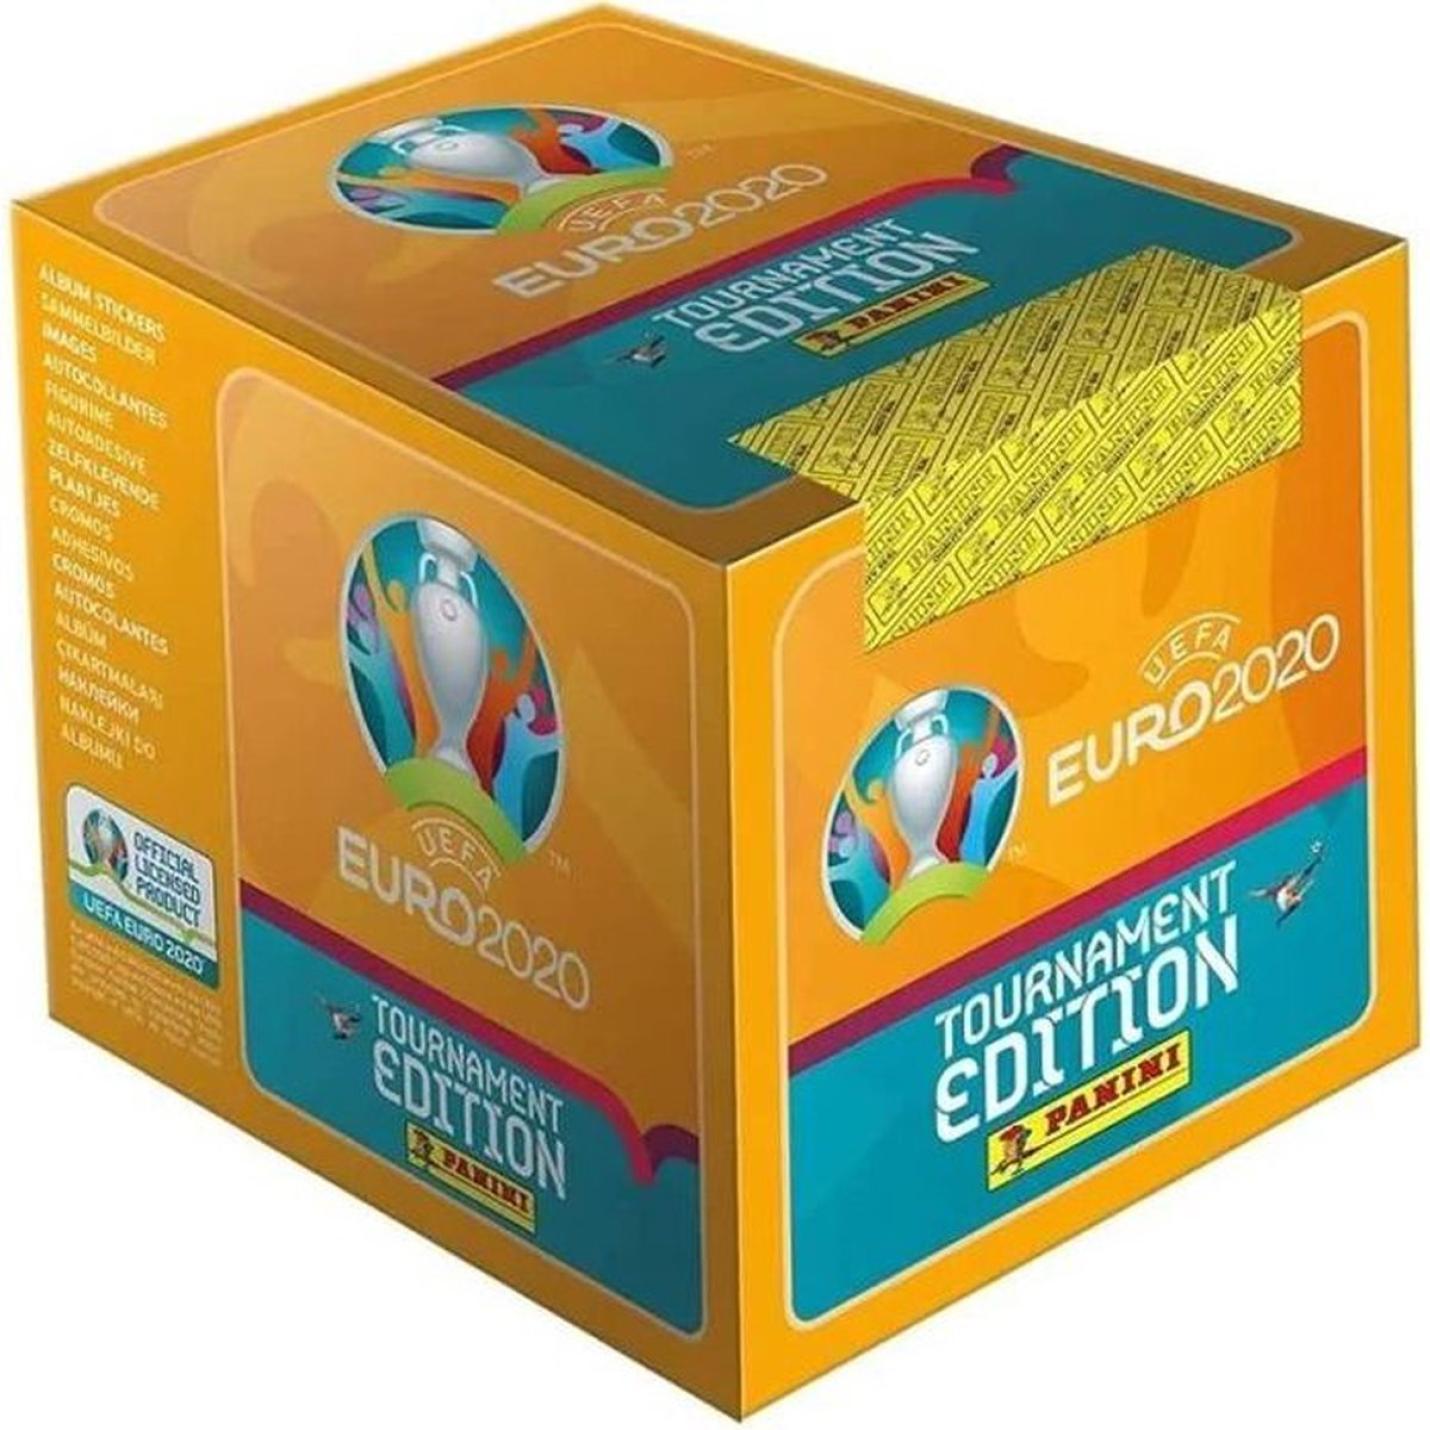 UEFA EURO 2020 Stickers 2021 Tournament Edition - Doos met 50 pakketten